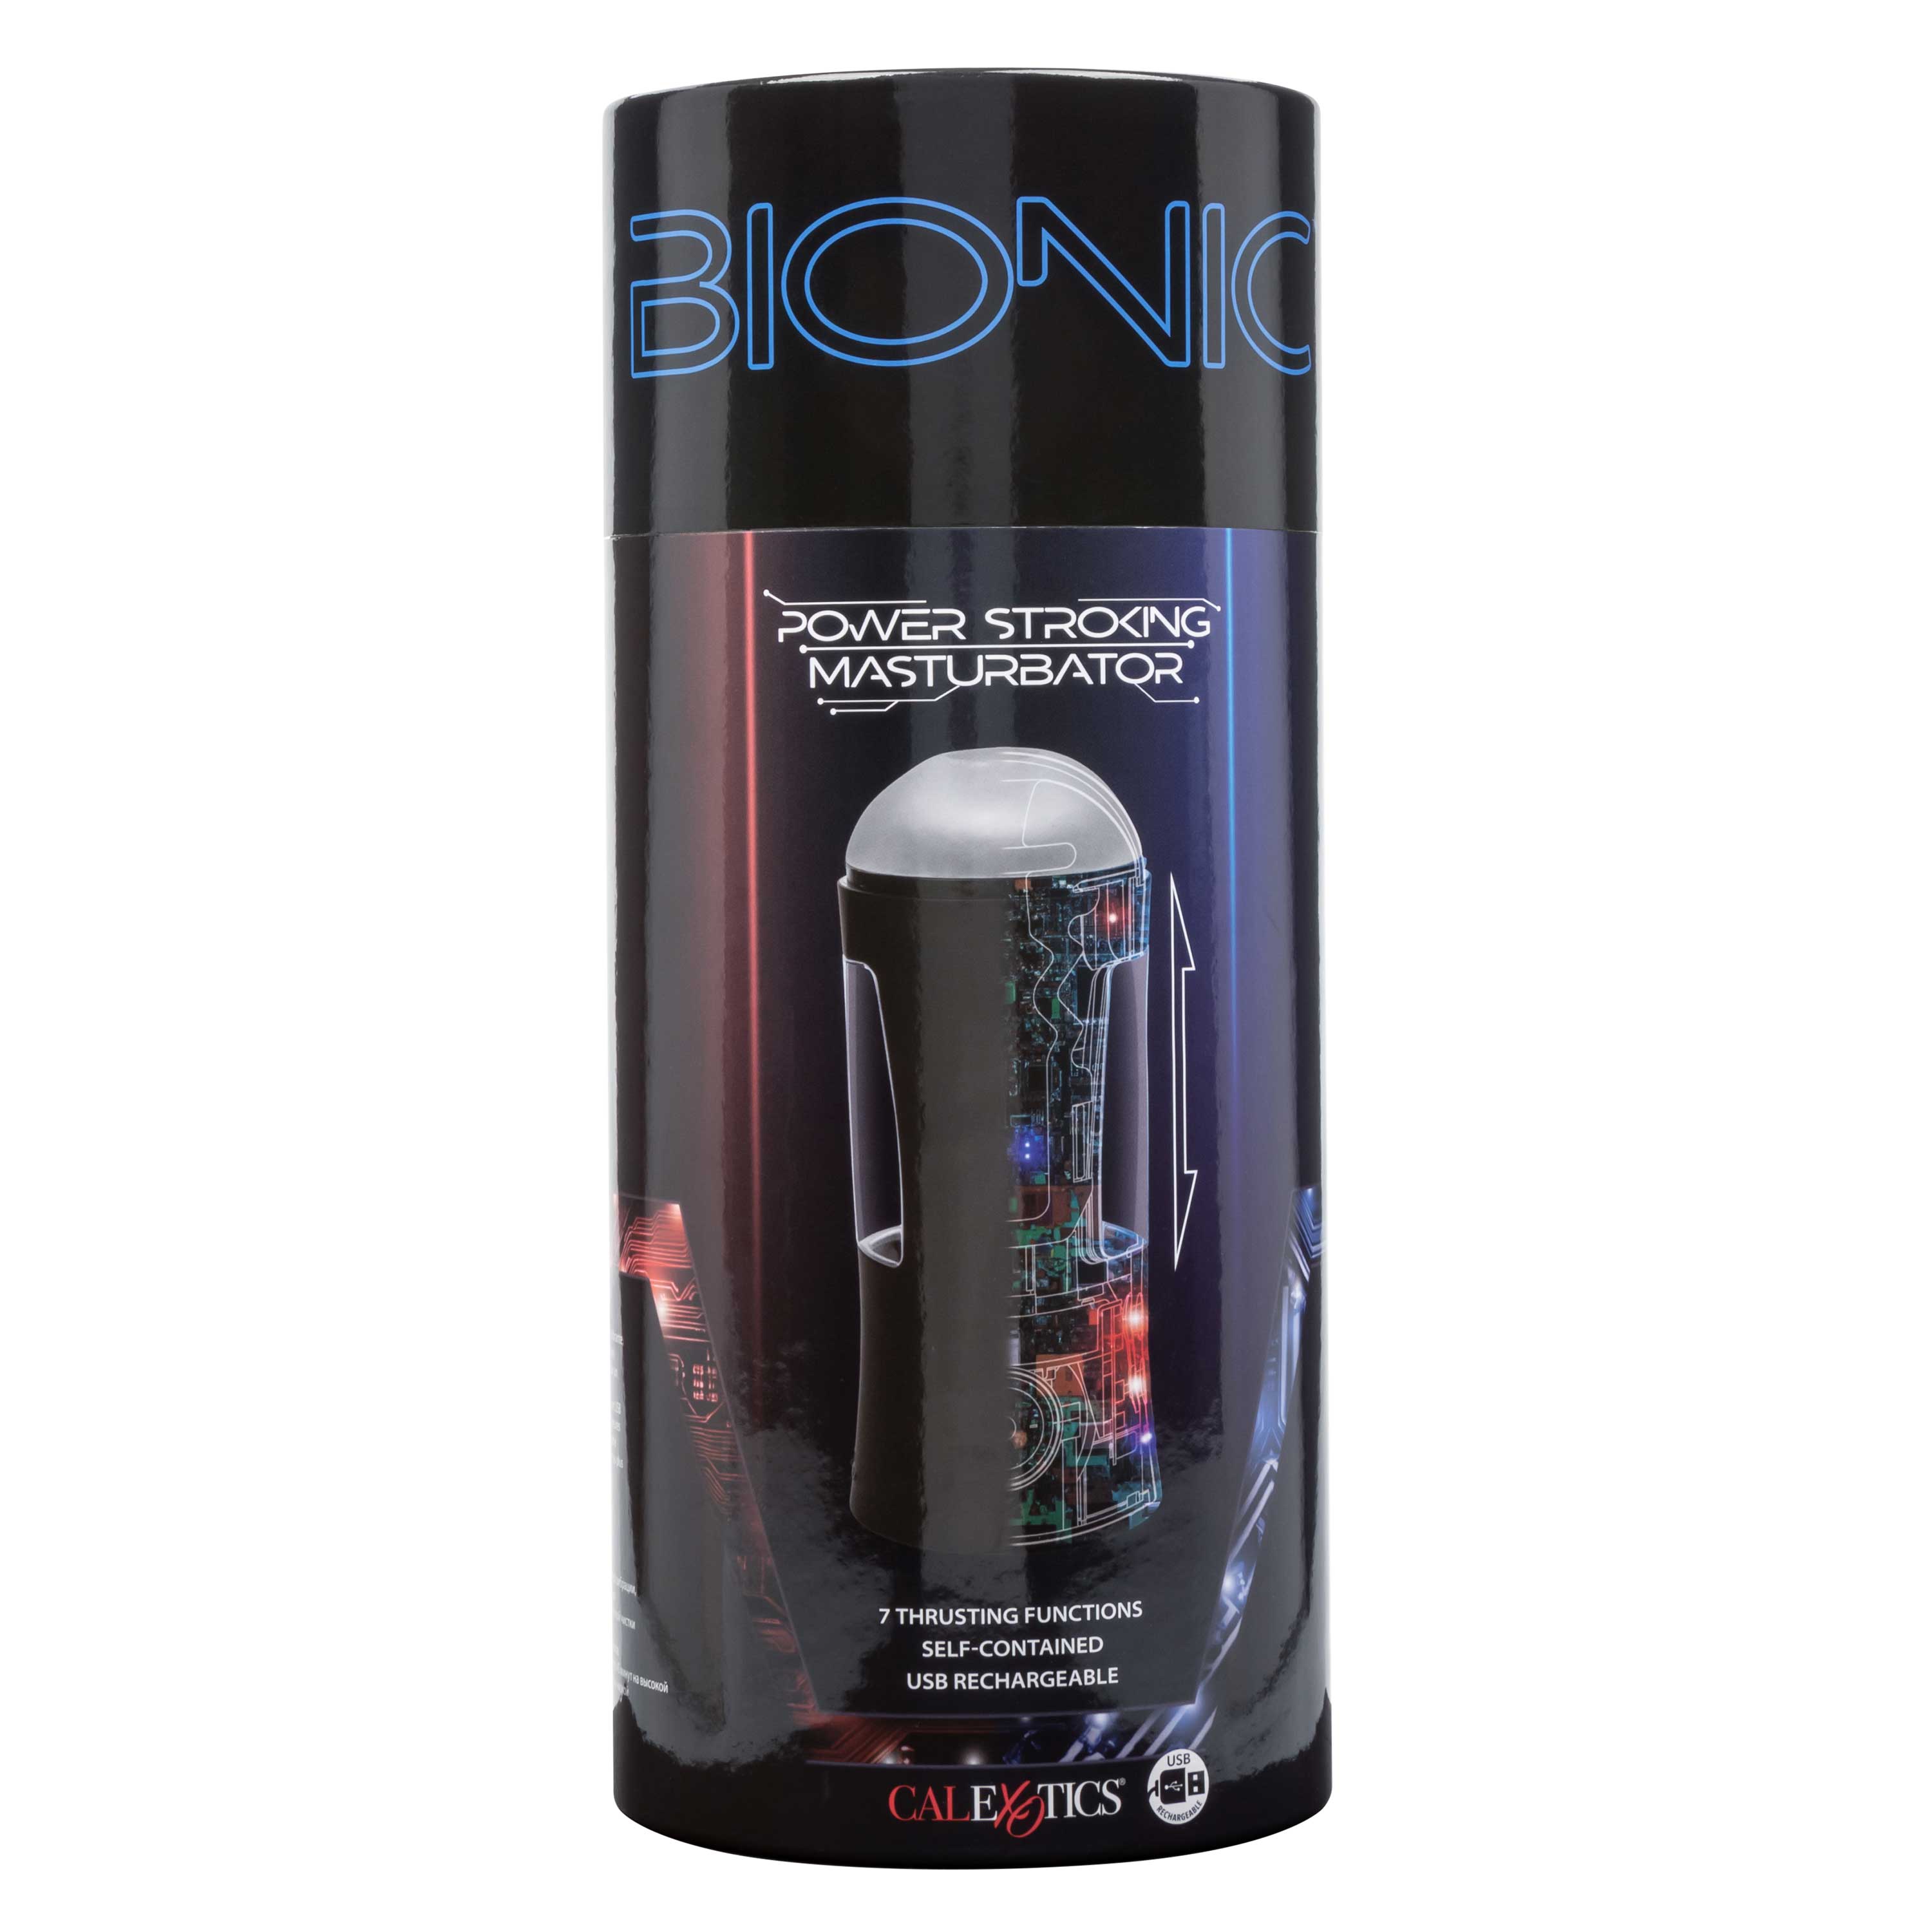 Bionic Power Stroking Masturbator - Black-9